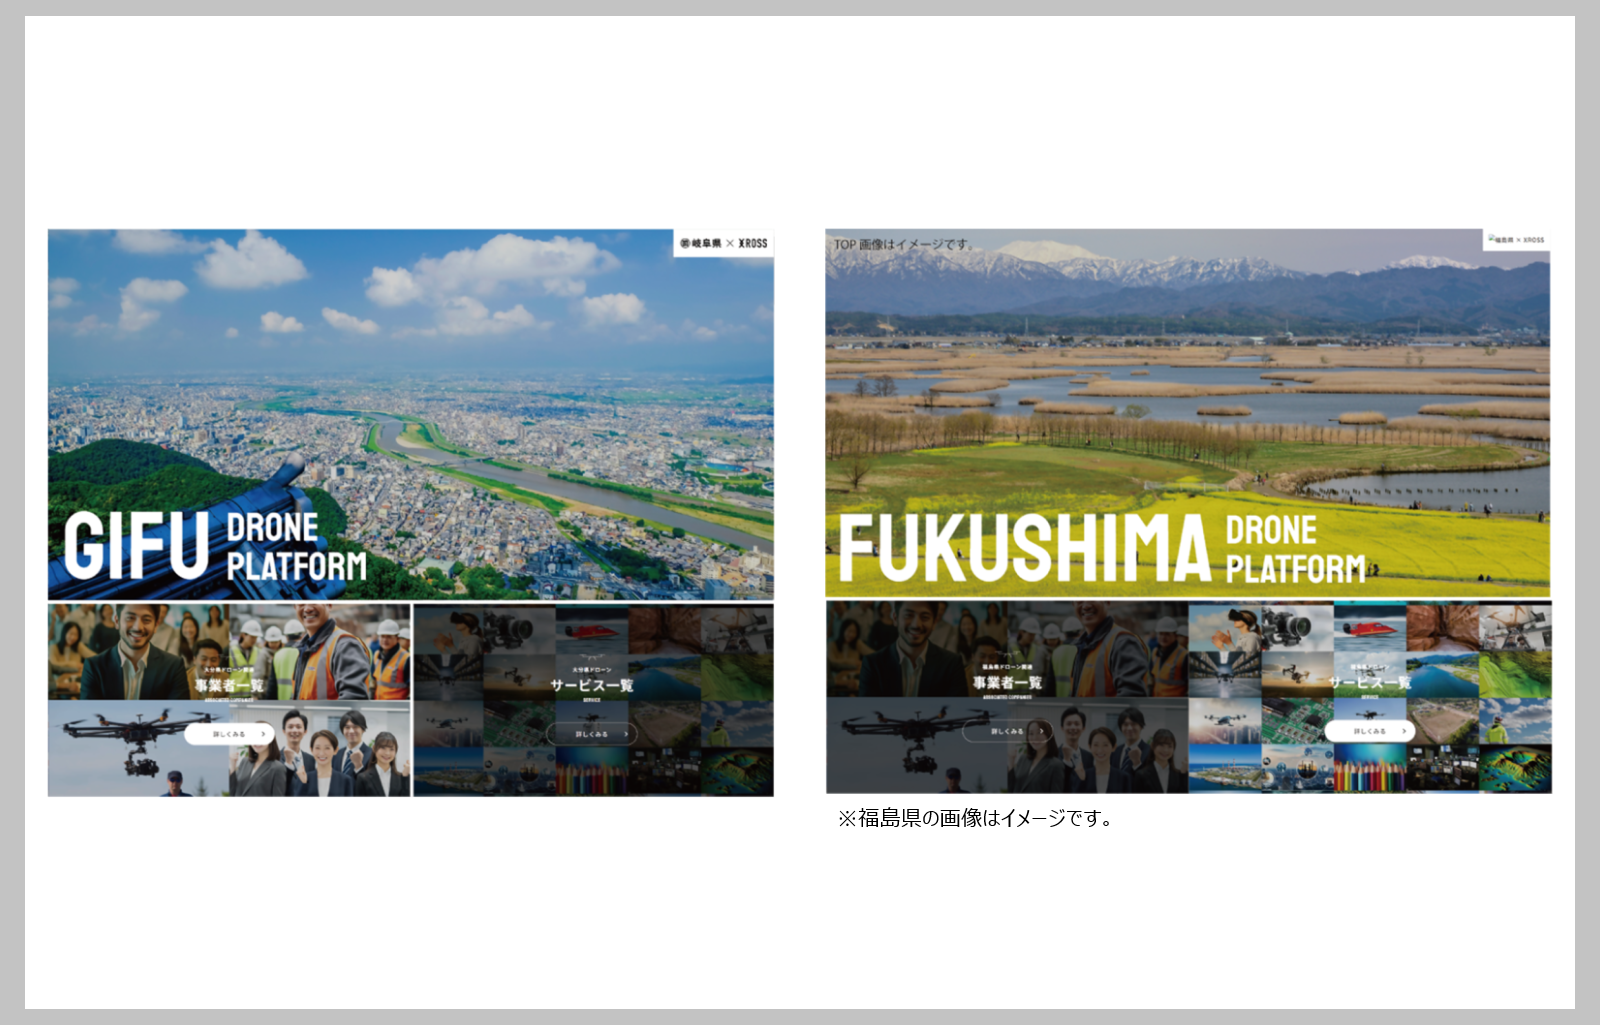 岐阜県ドローンプラットフォームの公開と福島県への導入が決定しました。